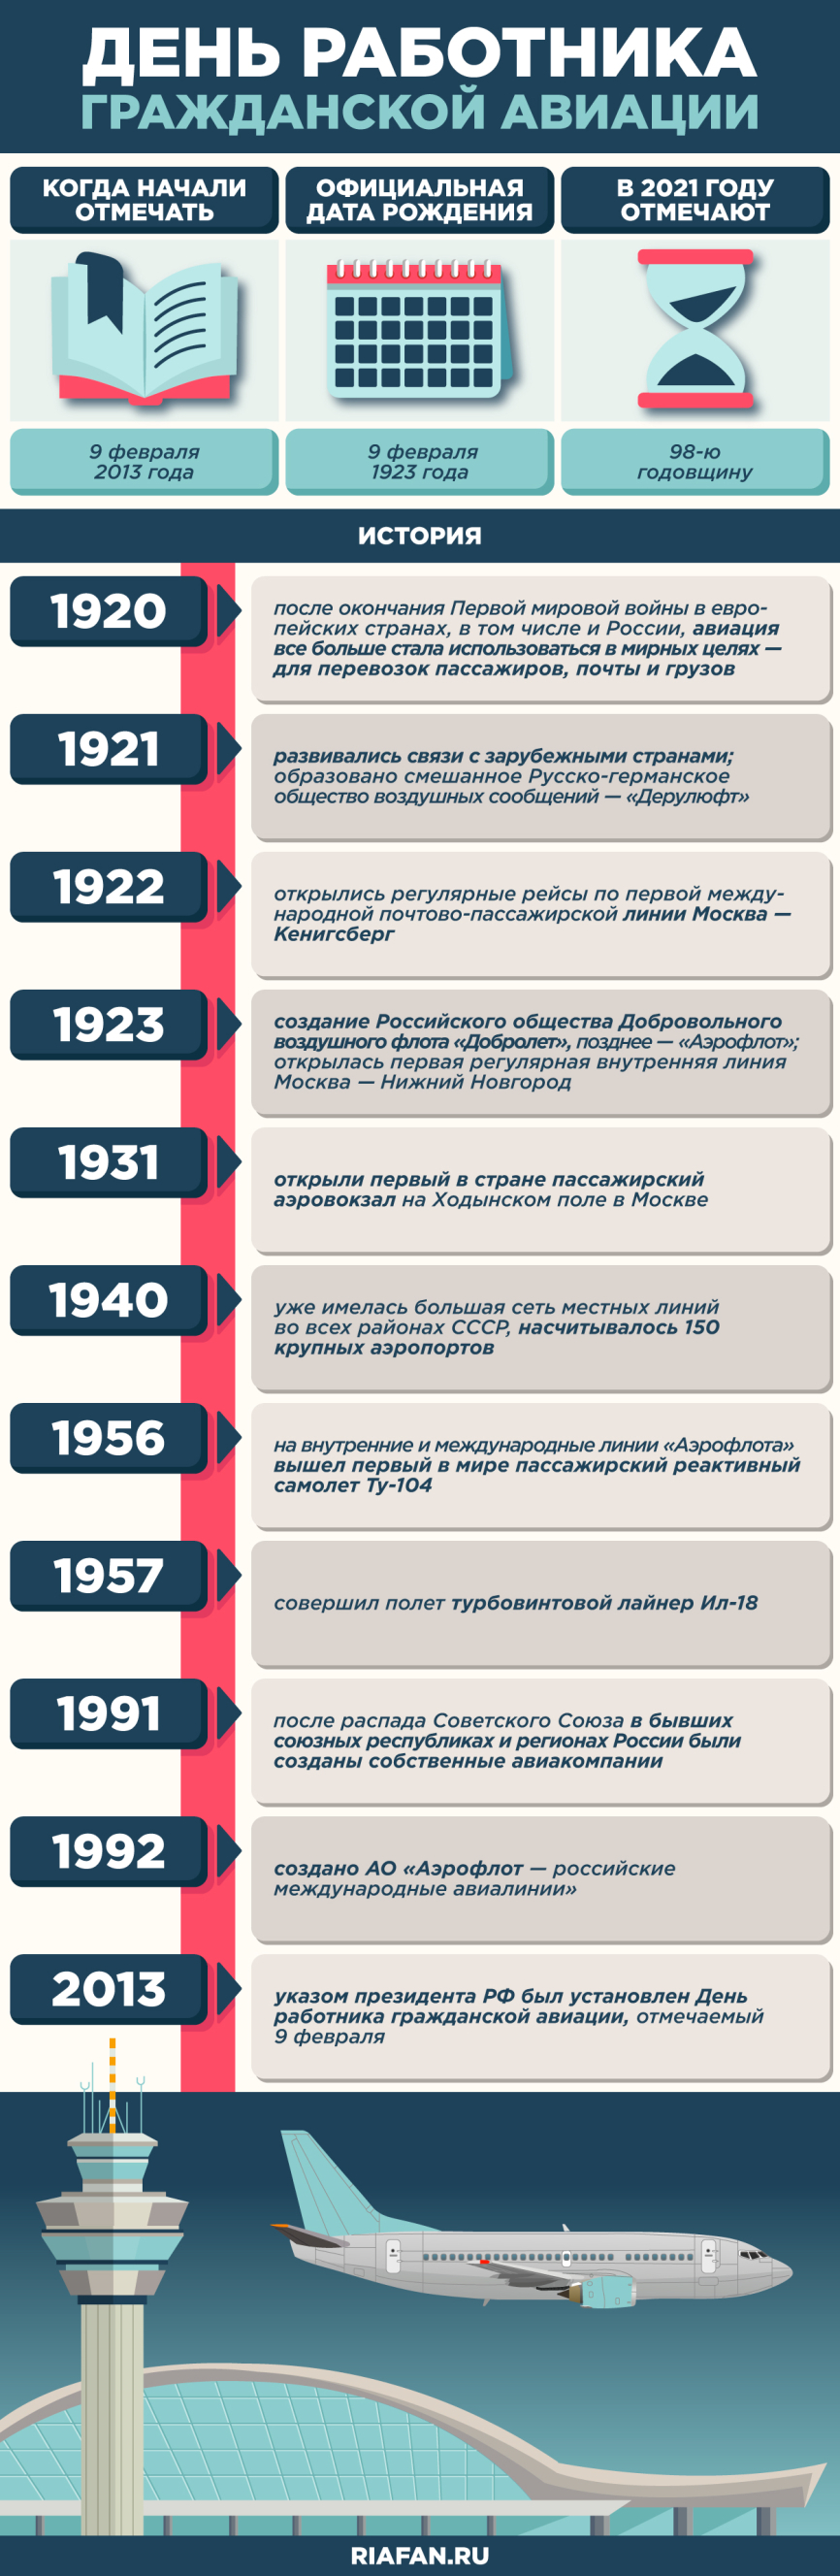 Интересные факты из истории гражданской авиации России